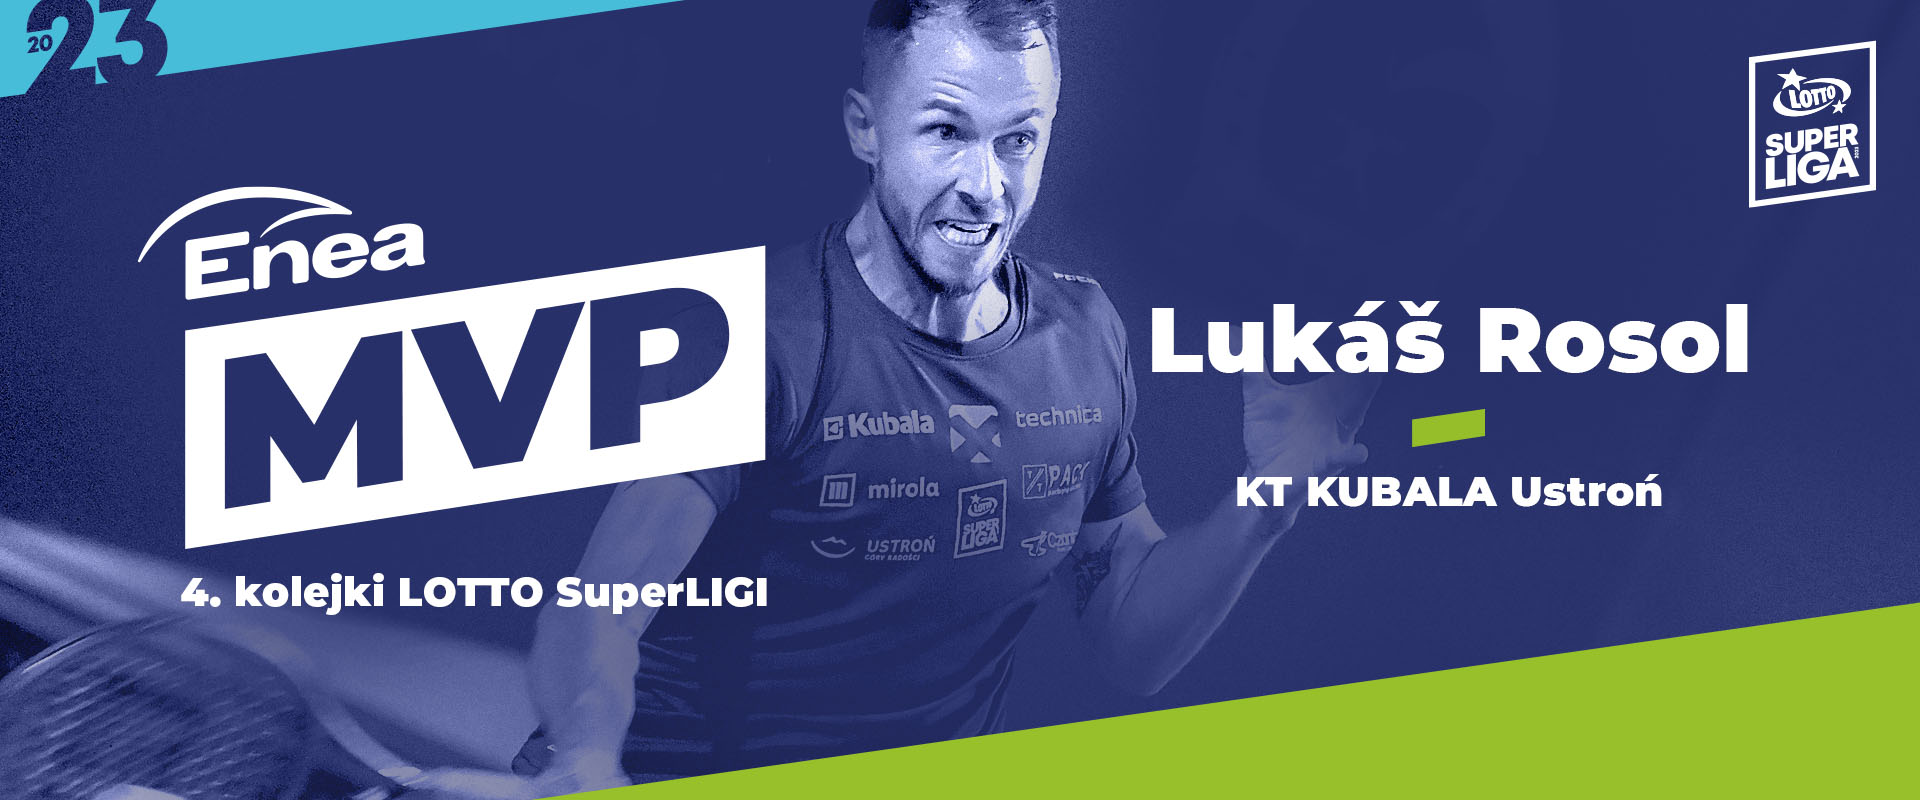 Lukas Rosol - Enea MVP 4. kolejki